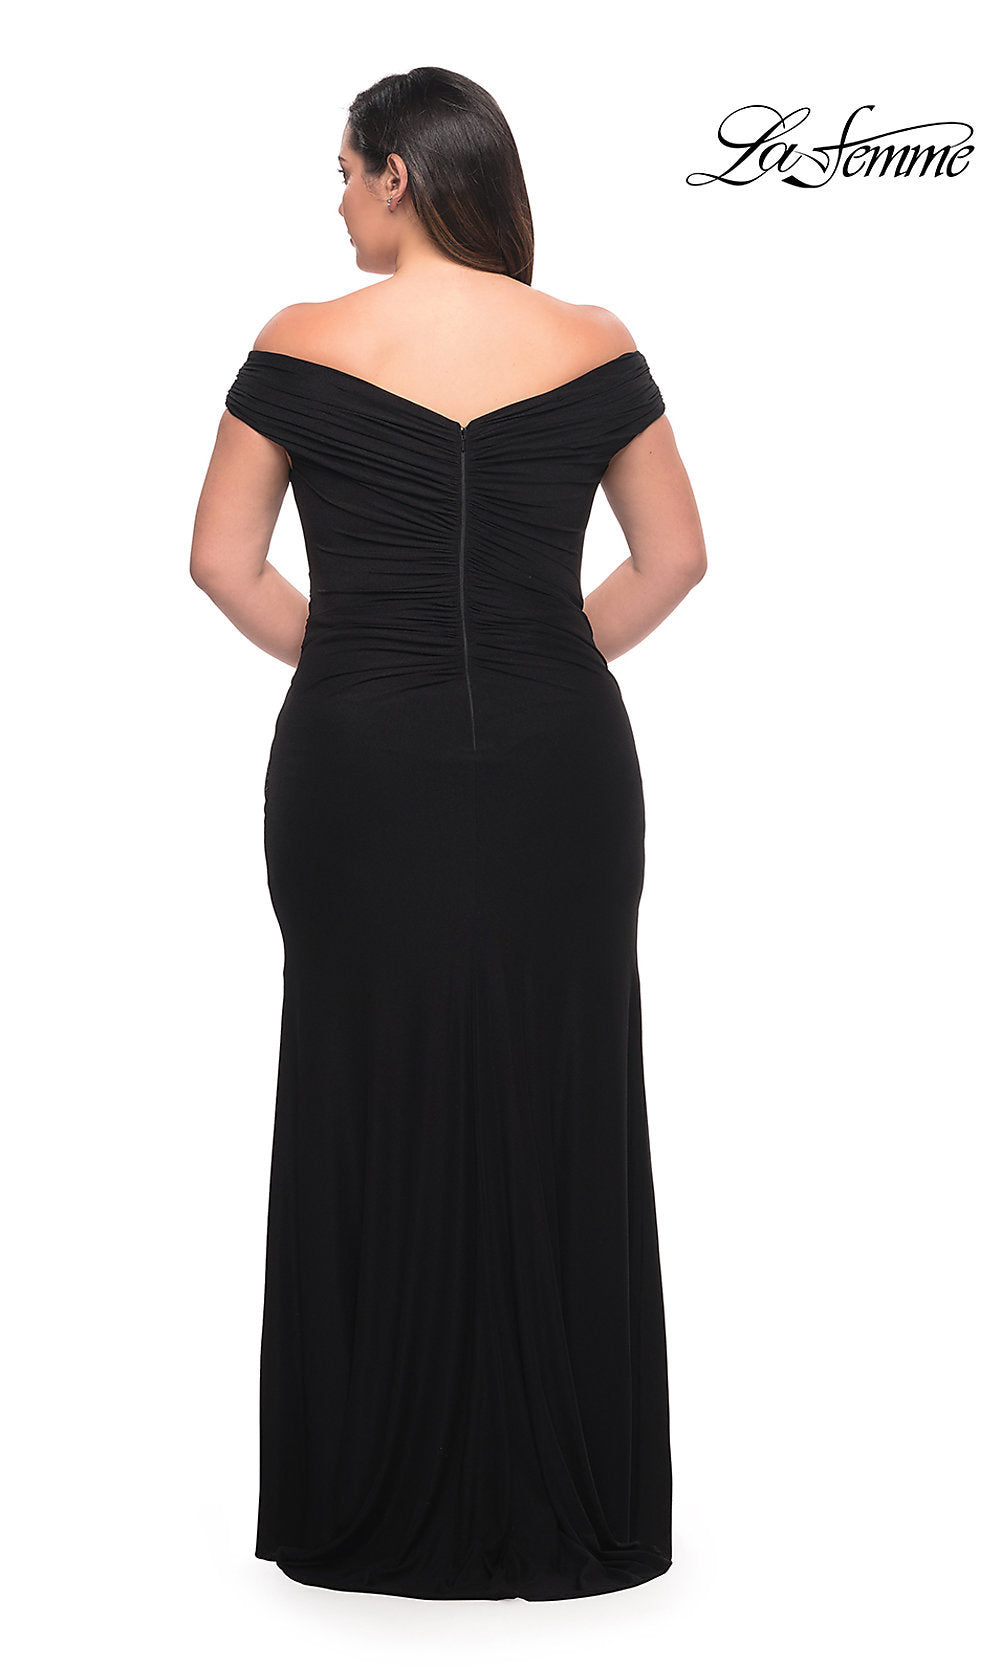  La Femme Off-the-Shoulder Long Plus-Size Gown